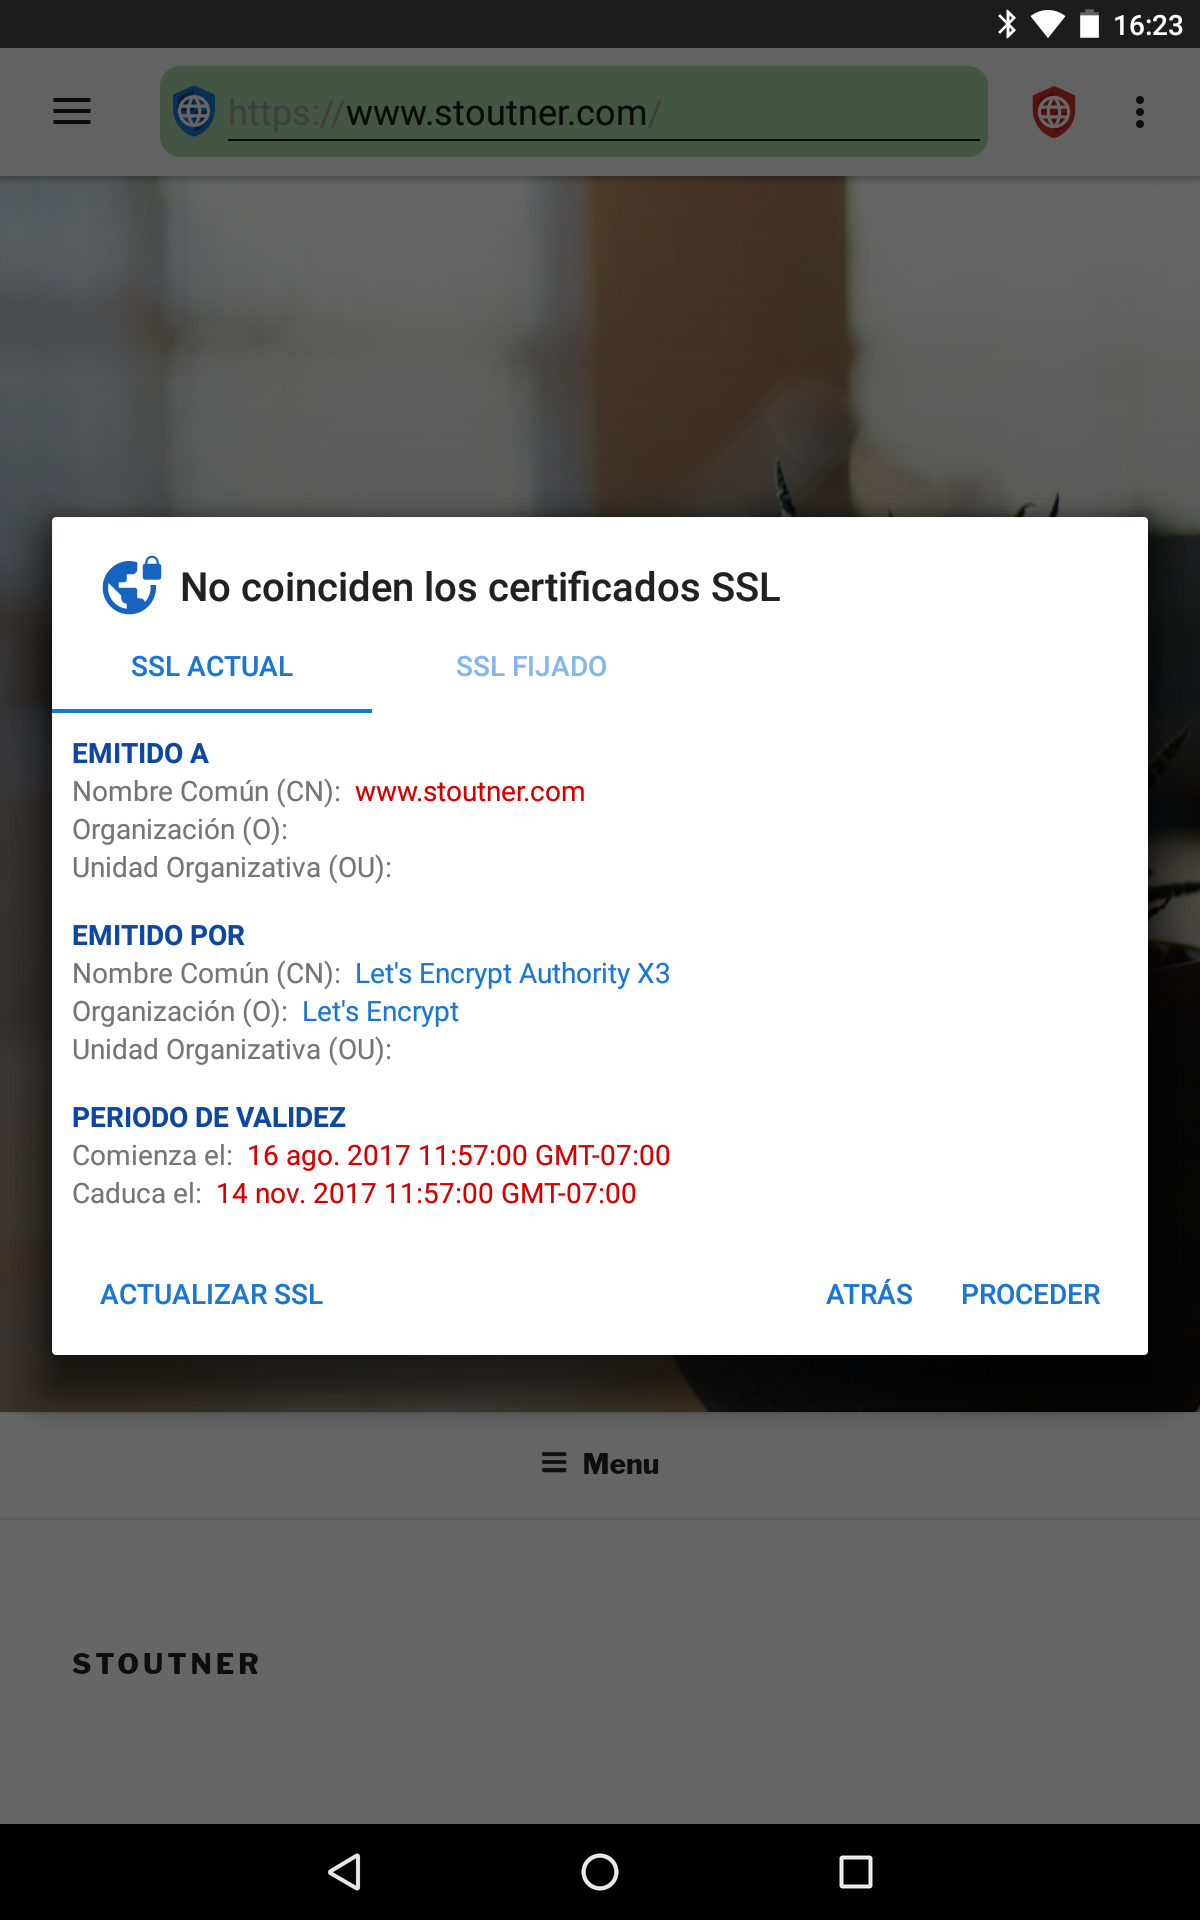 fastlane/metadata/android/es/sevenInchScreenshots/02 - SSL Certificate Mismatch - es.png